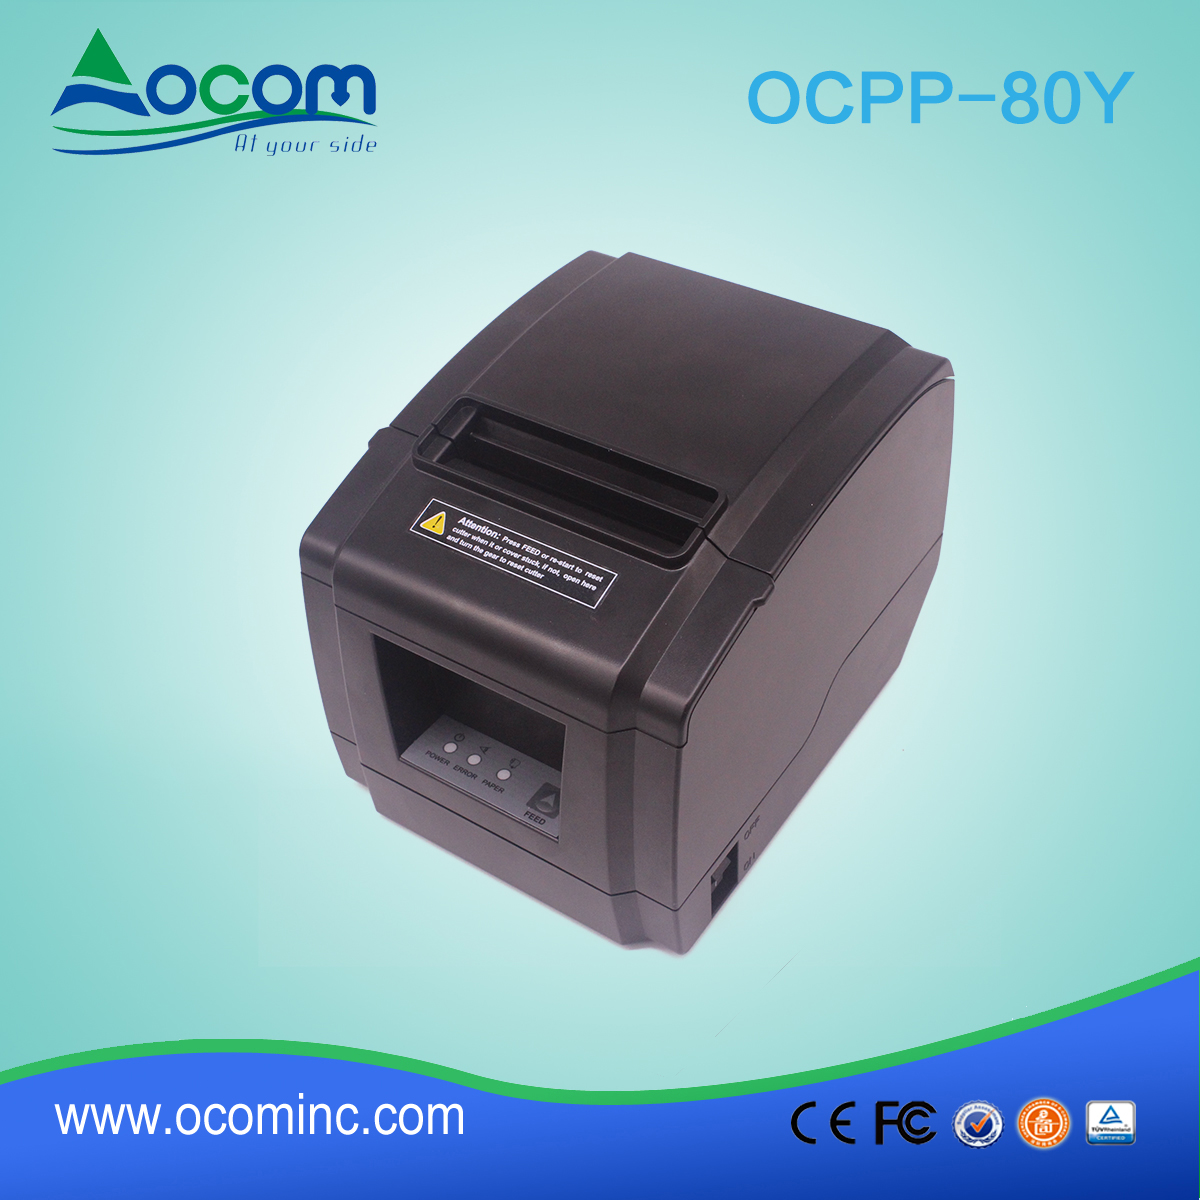 OCPP-80Y-China завод авторезатель 80 мм POS чековый принтер